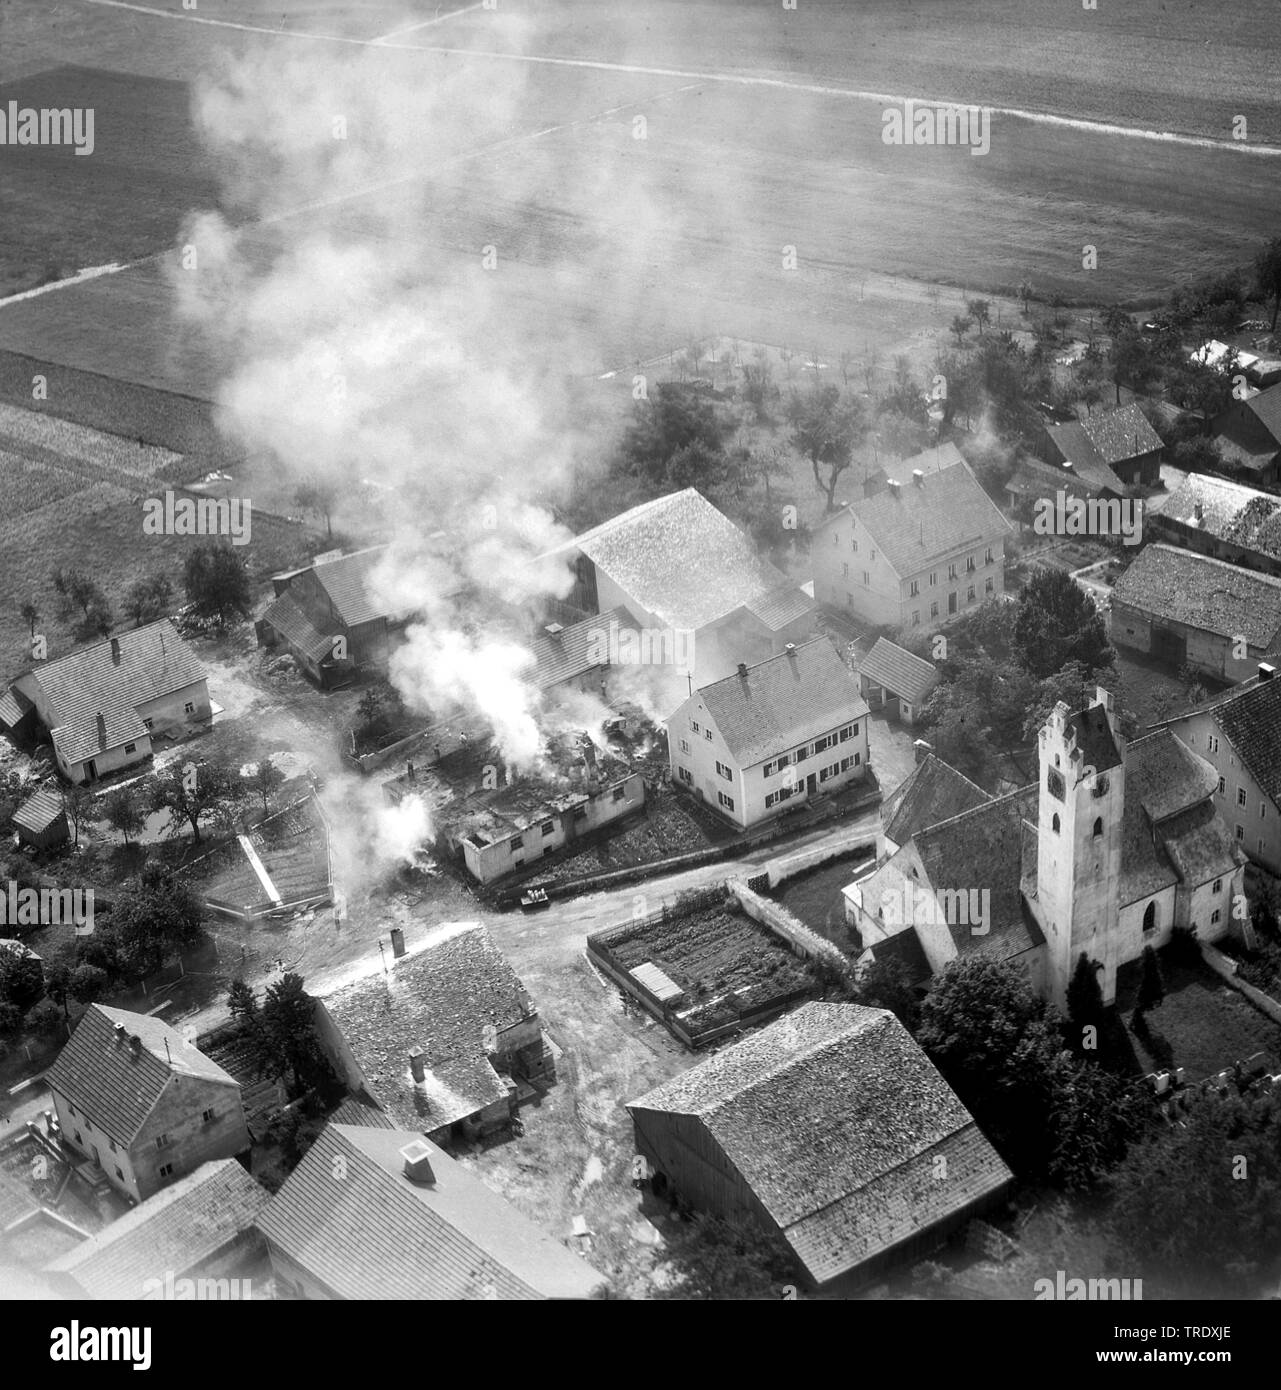 Maison en feu une Kirchbruck à Hürth, photo aérienne de l'année 1960, l'Allemagne, la Bavière Banque D'Images